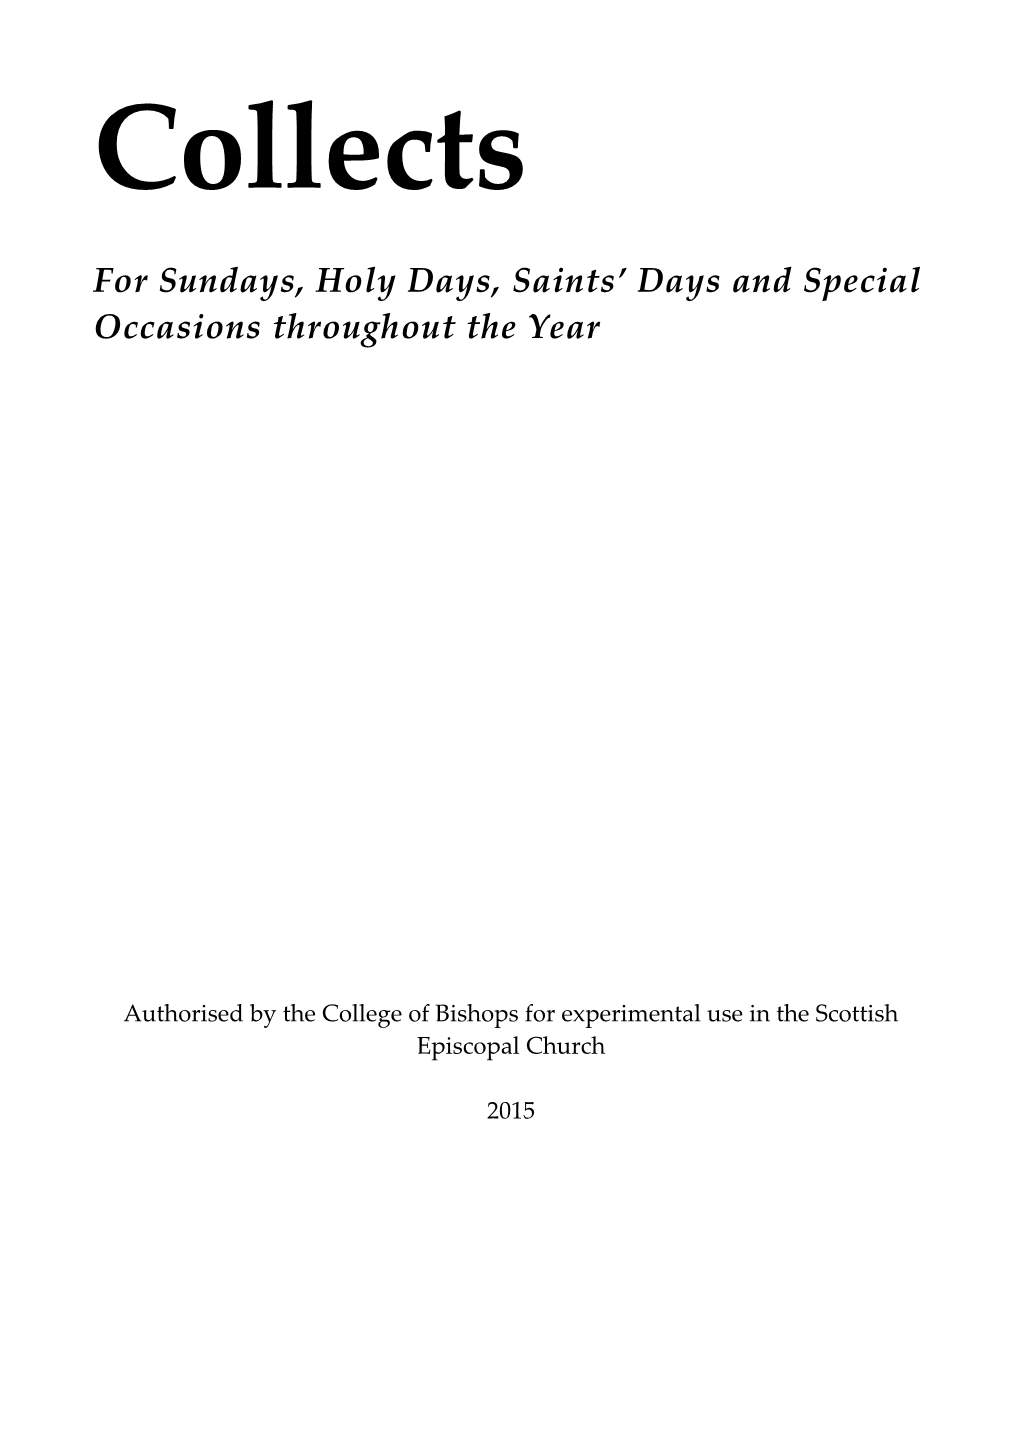 Sundays and Holy Days 19